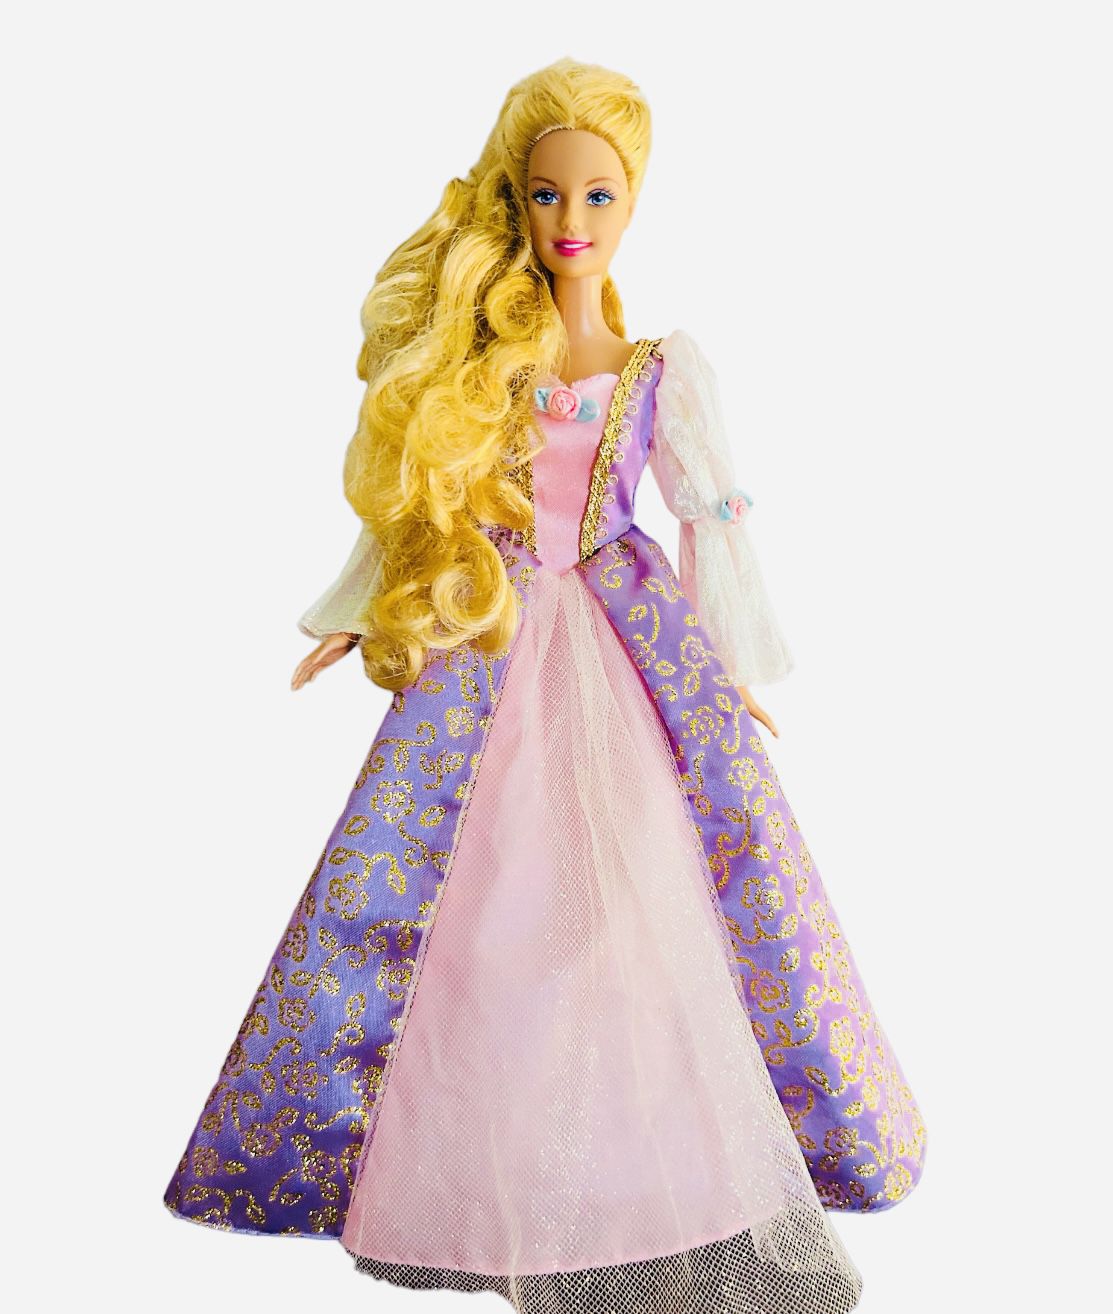 Rapunzel Growing Hair 1998 Vintage Mattel Barbie